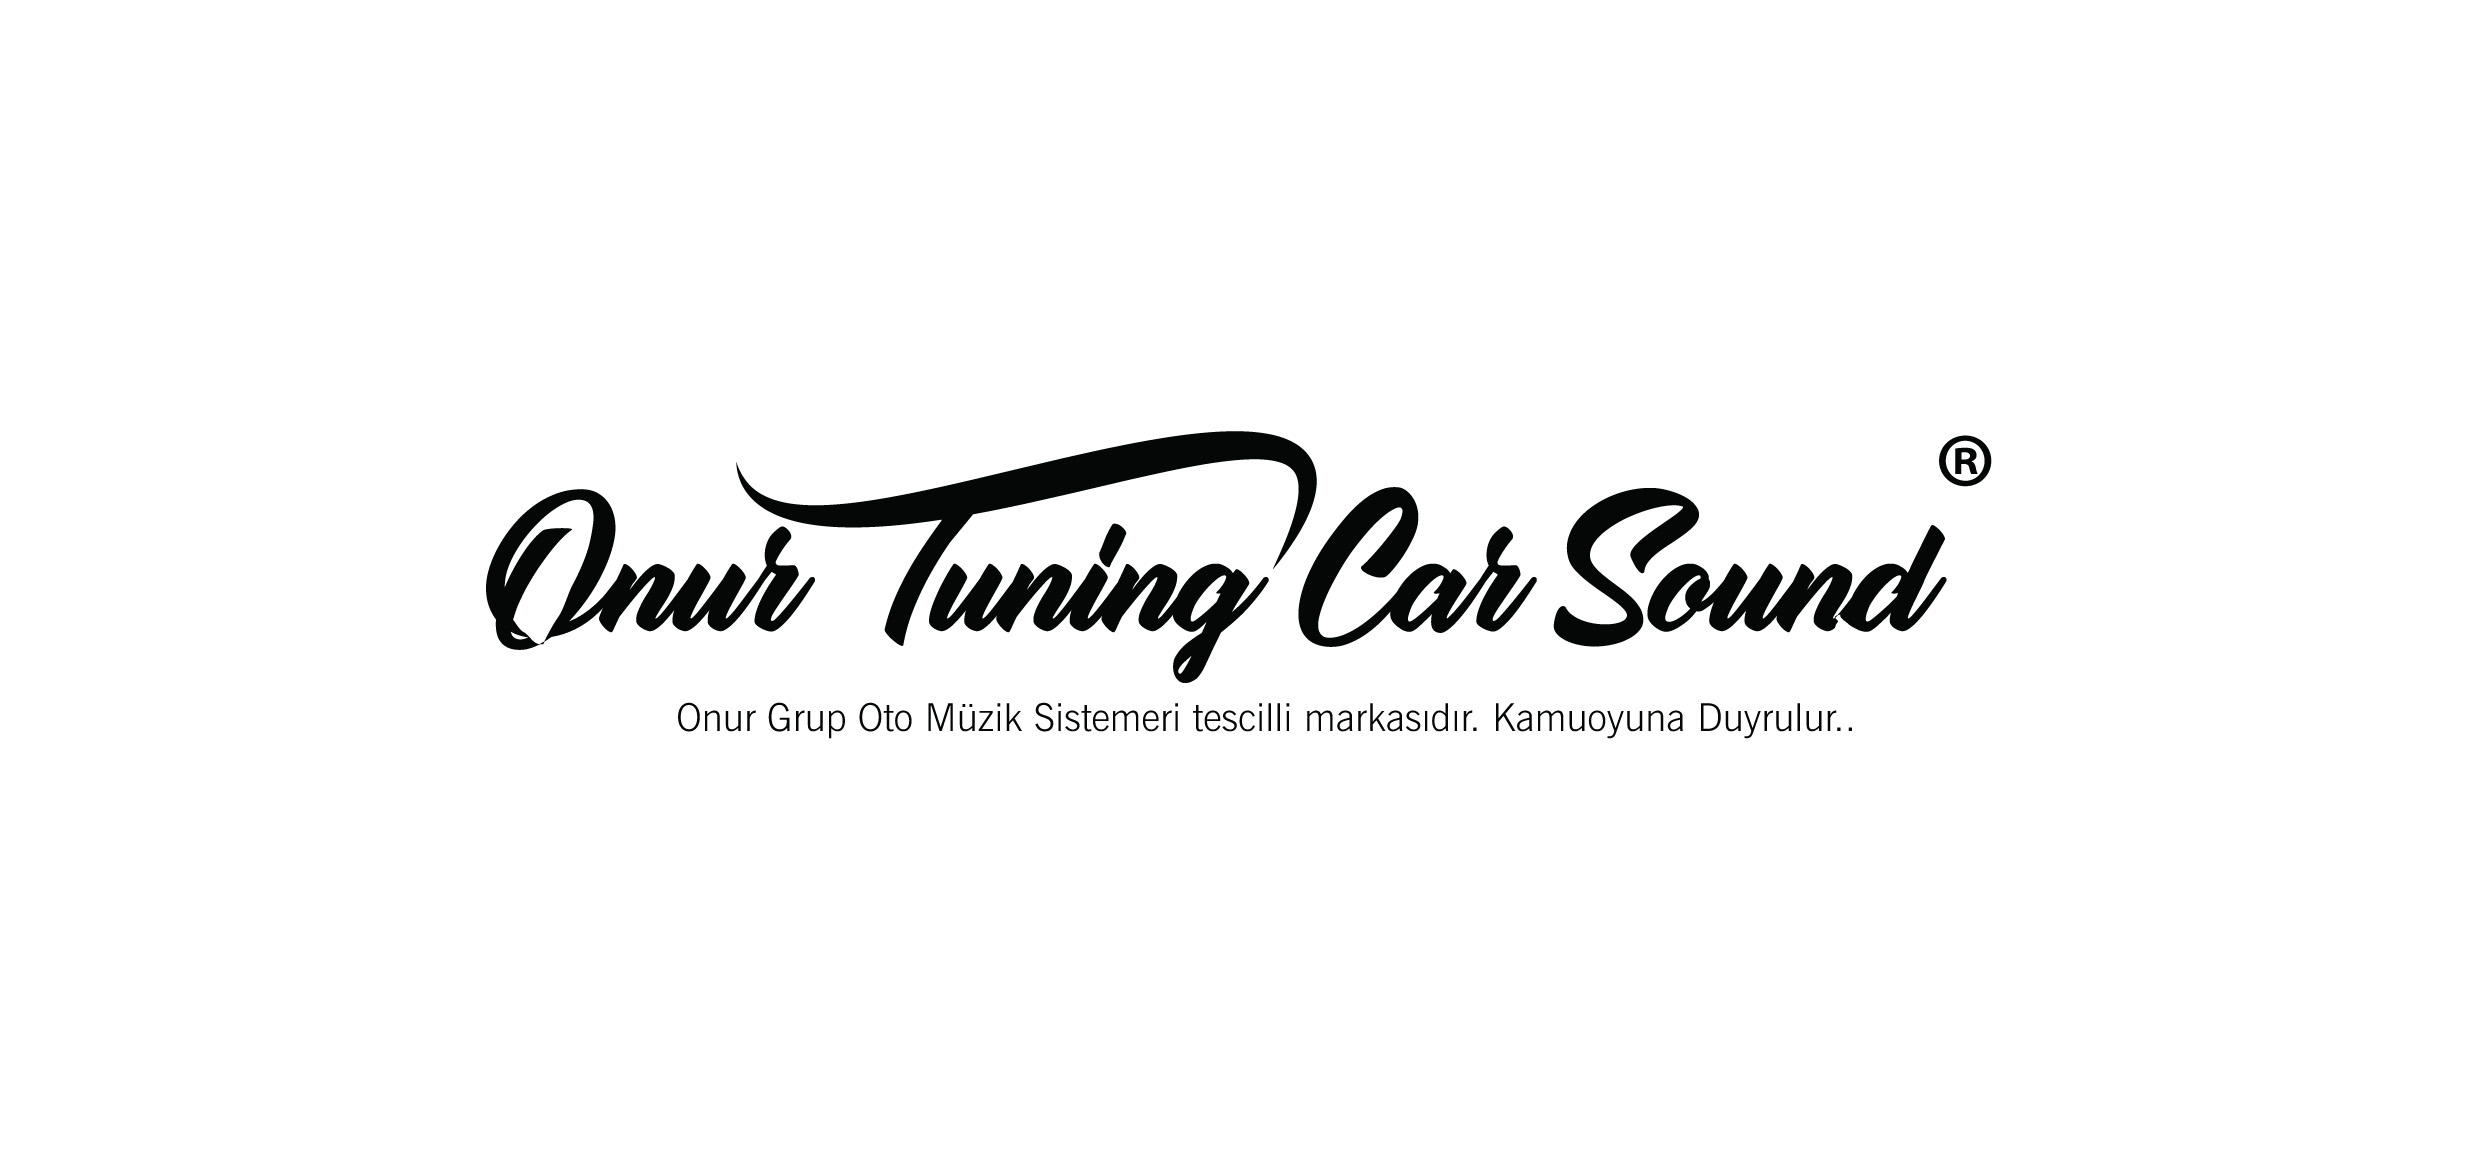 Onur Tuning Car Sound